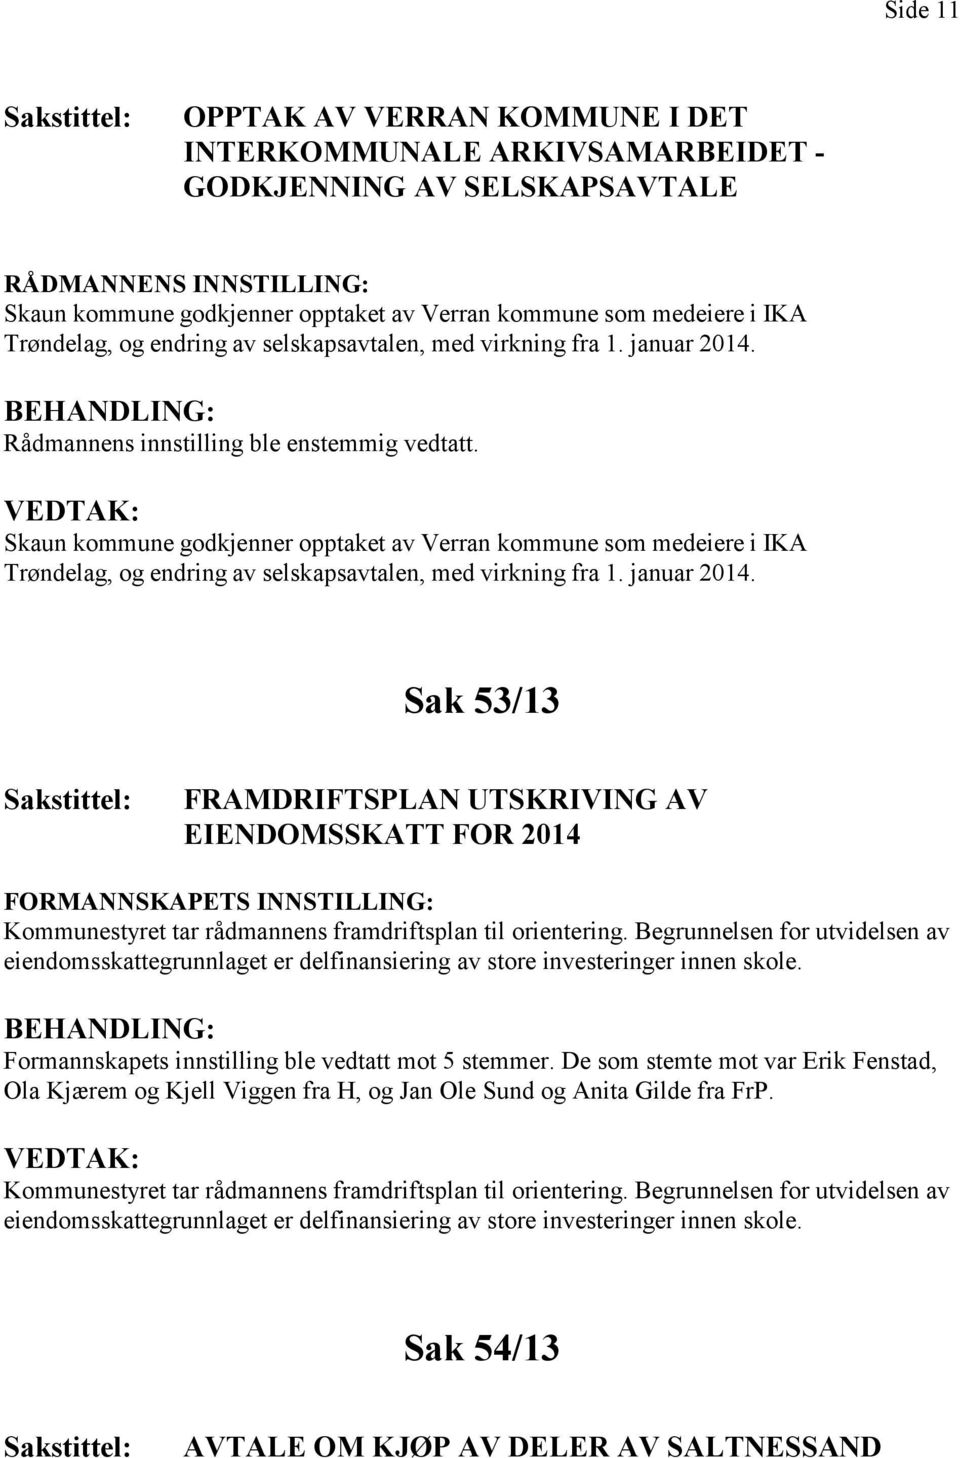 Skaun kommune godkjenner opptaket av Verran kommune som medeiere i IKA Trøndelag, og endring av selskapsavtalen, med virkning fra 1. januar 2014.